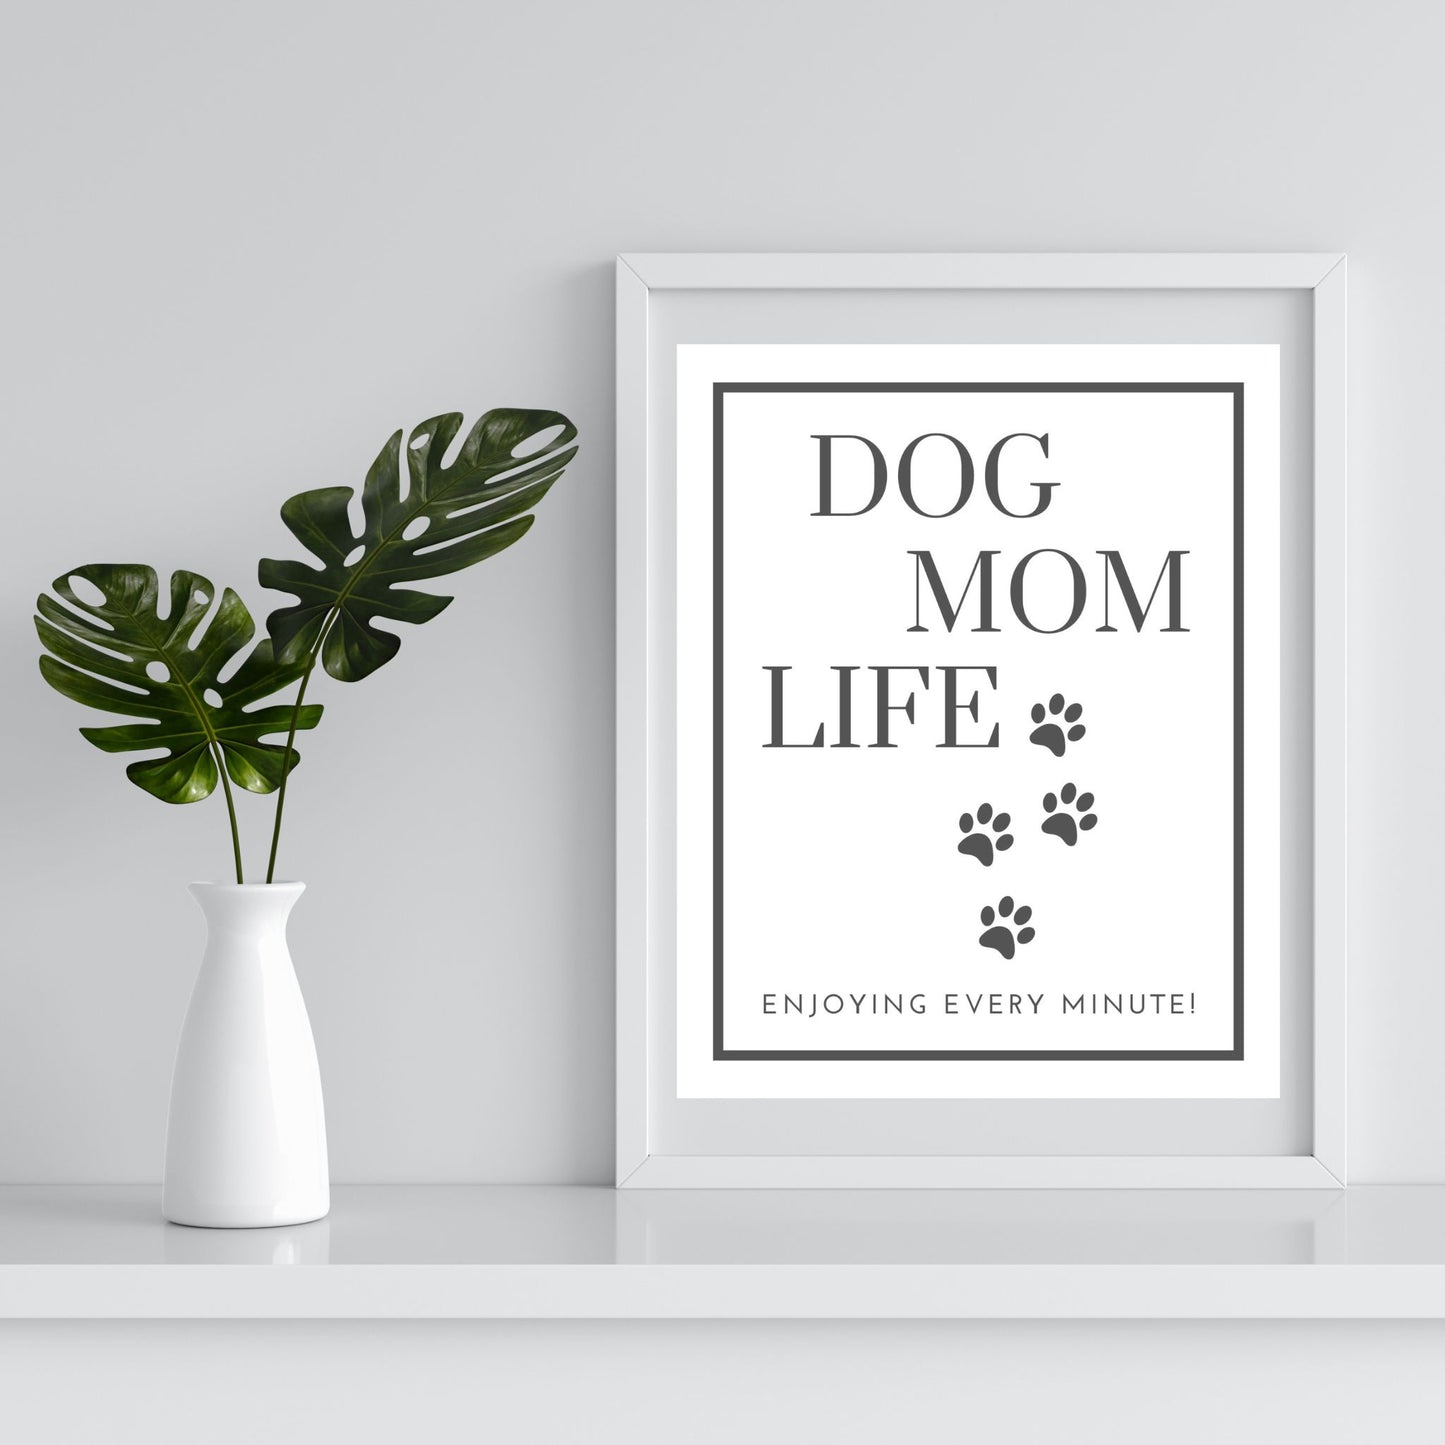 Printable Download - Dog Mom Life... Enjoying Every Minute! | Order your dog mom printable download today | Shown framed for inspiration | oak7west.com